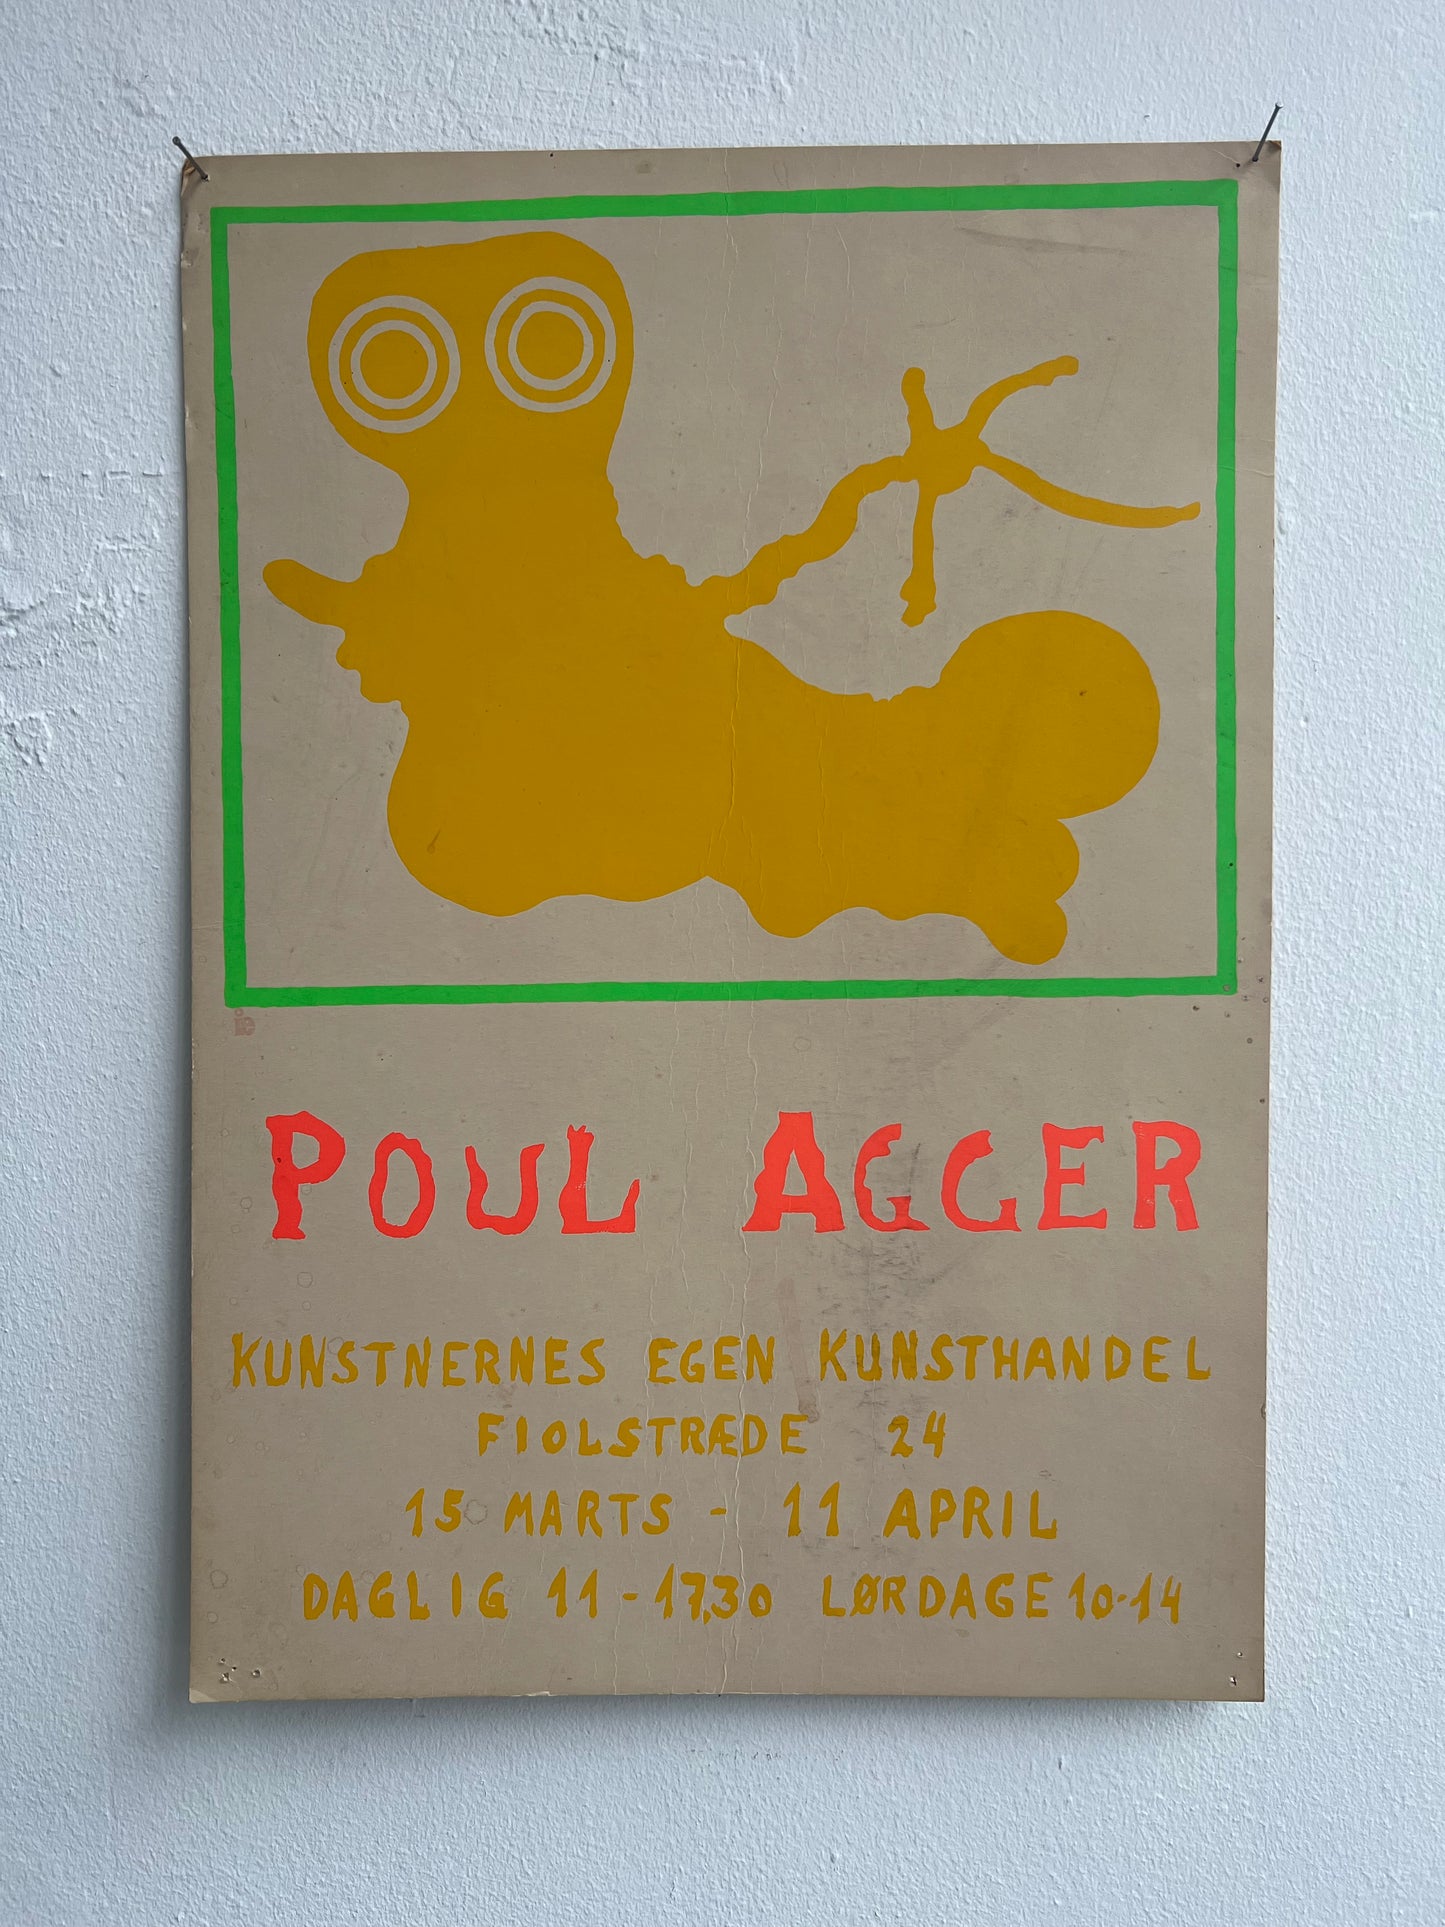 Poul Agger. “Kunstnernes egen kunsthandel”